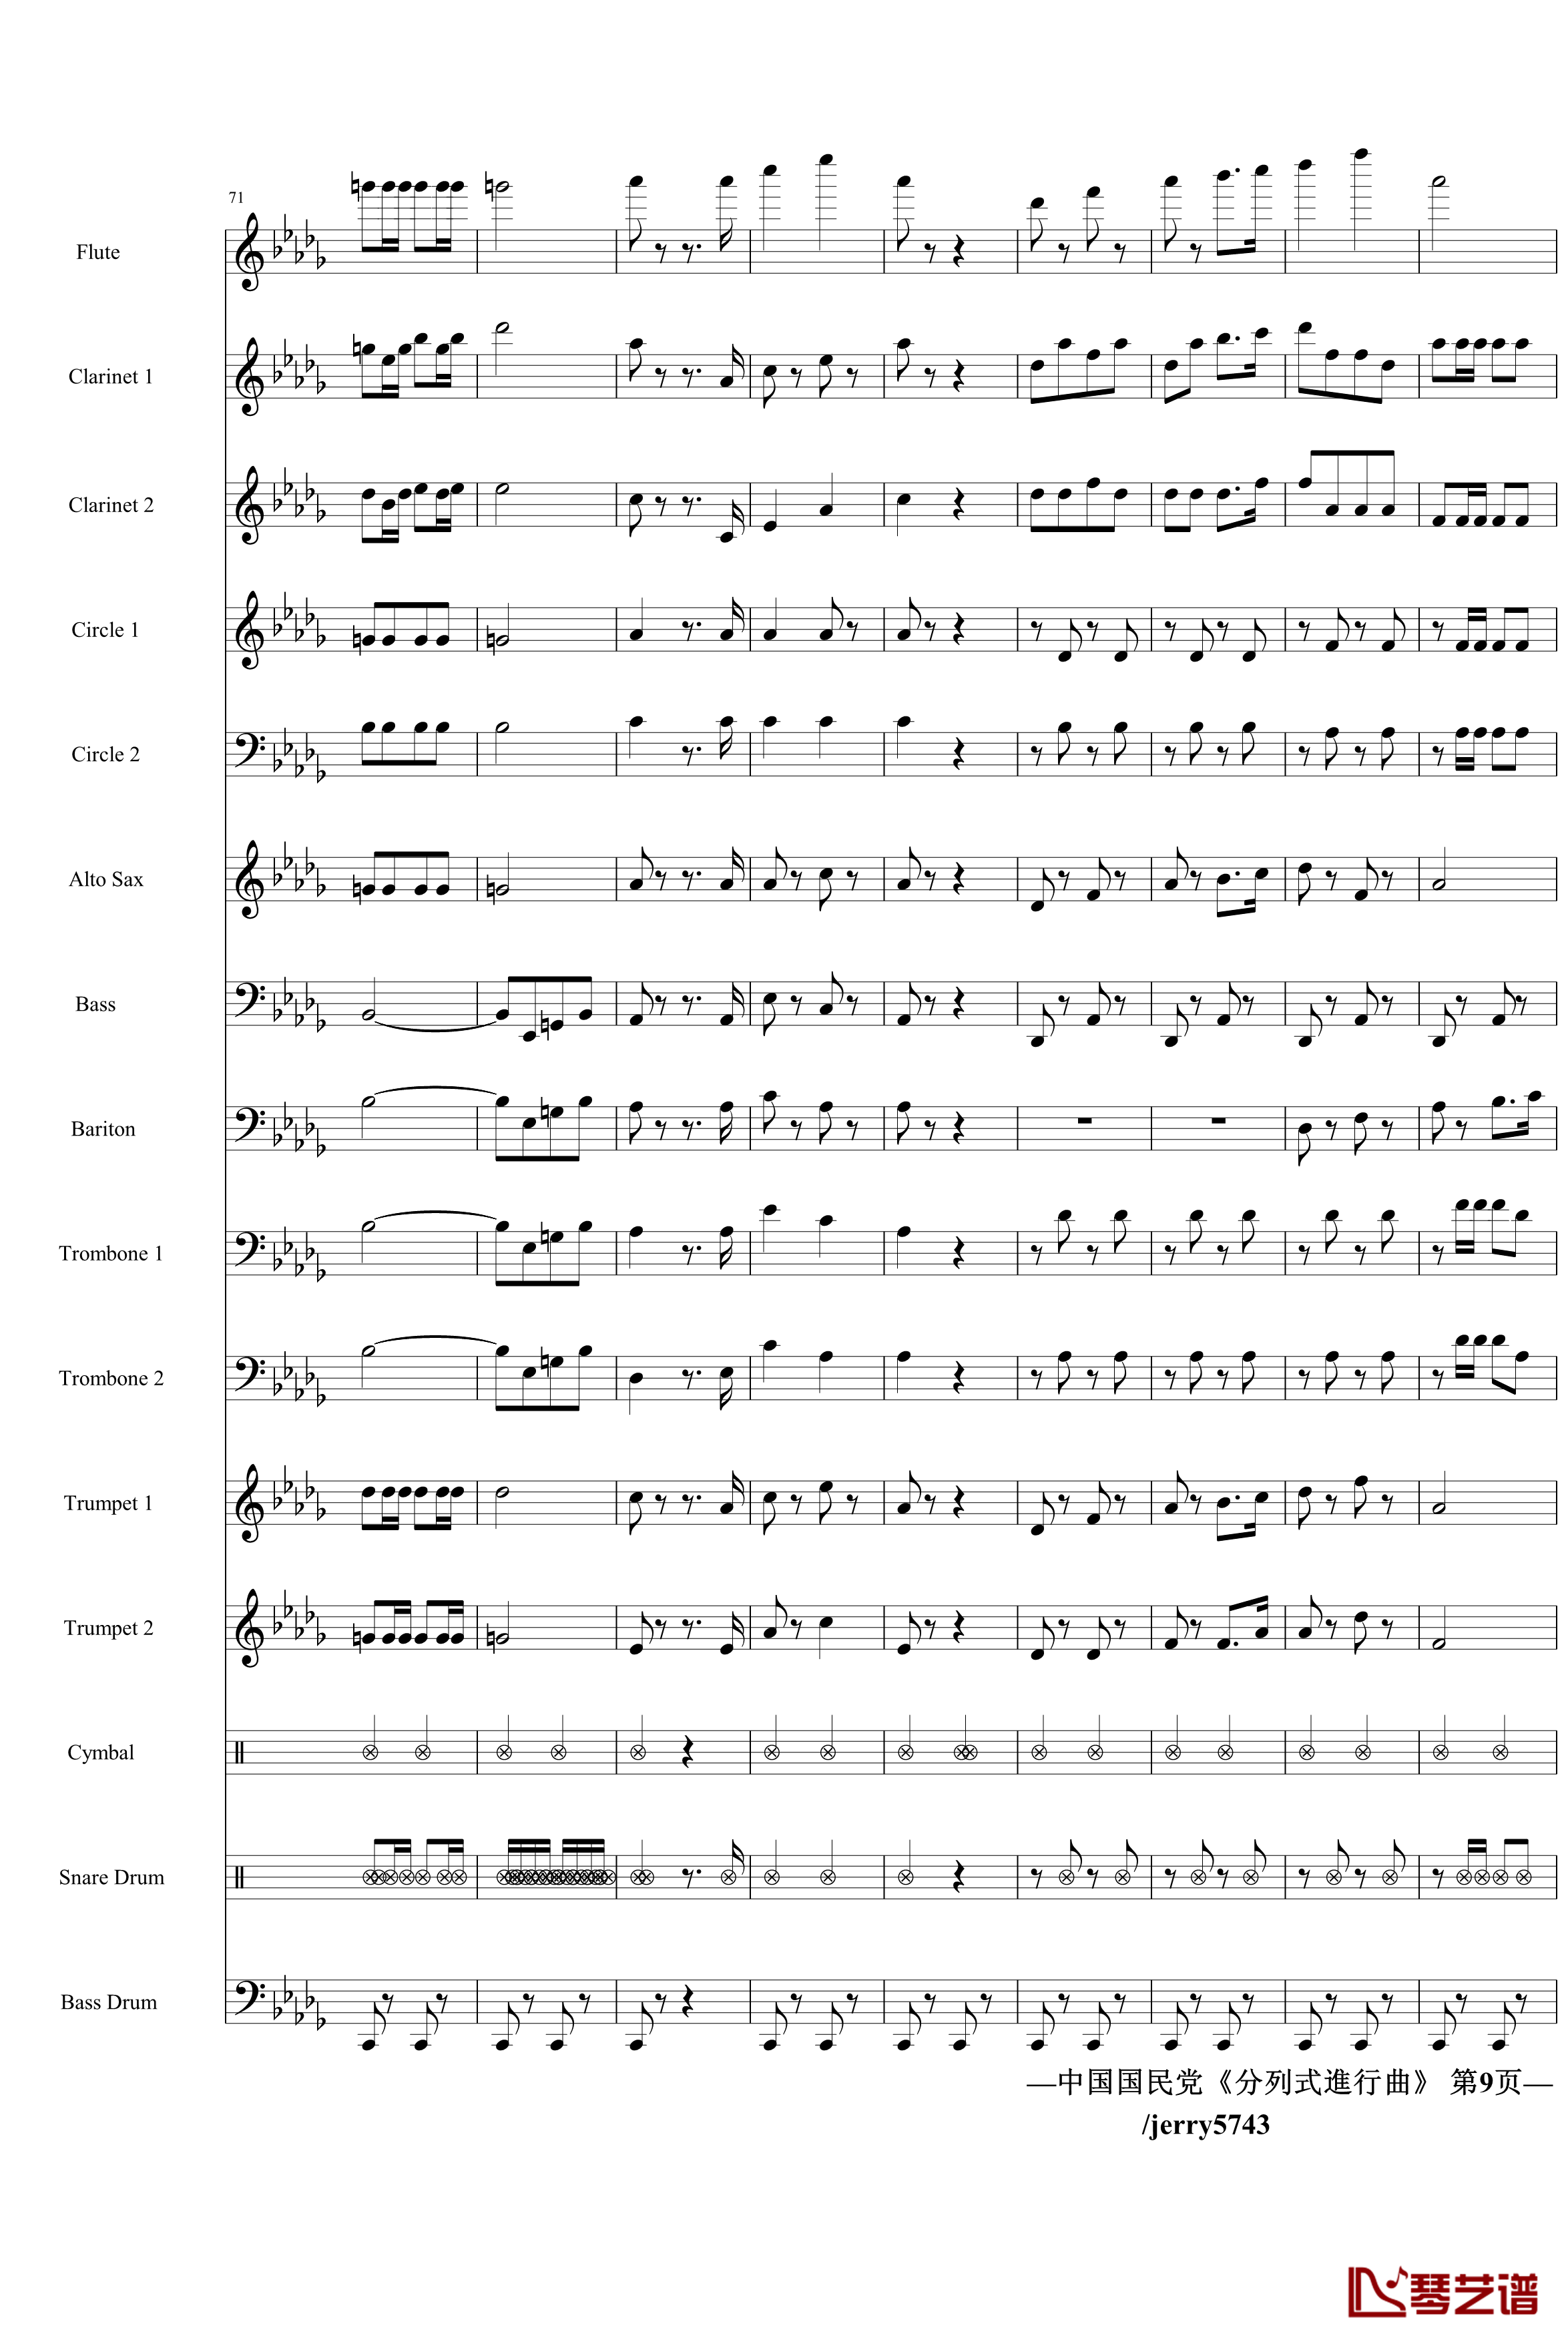 分列式進行曲钢琴谱-jerry5743出品-中国名曲9